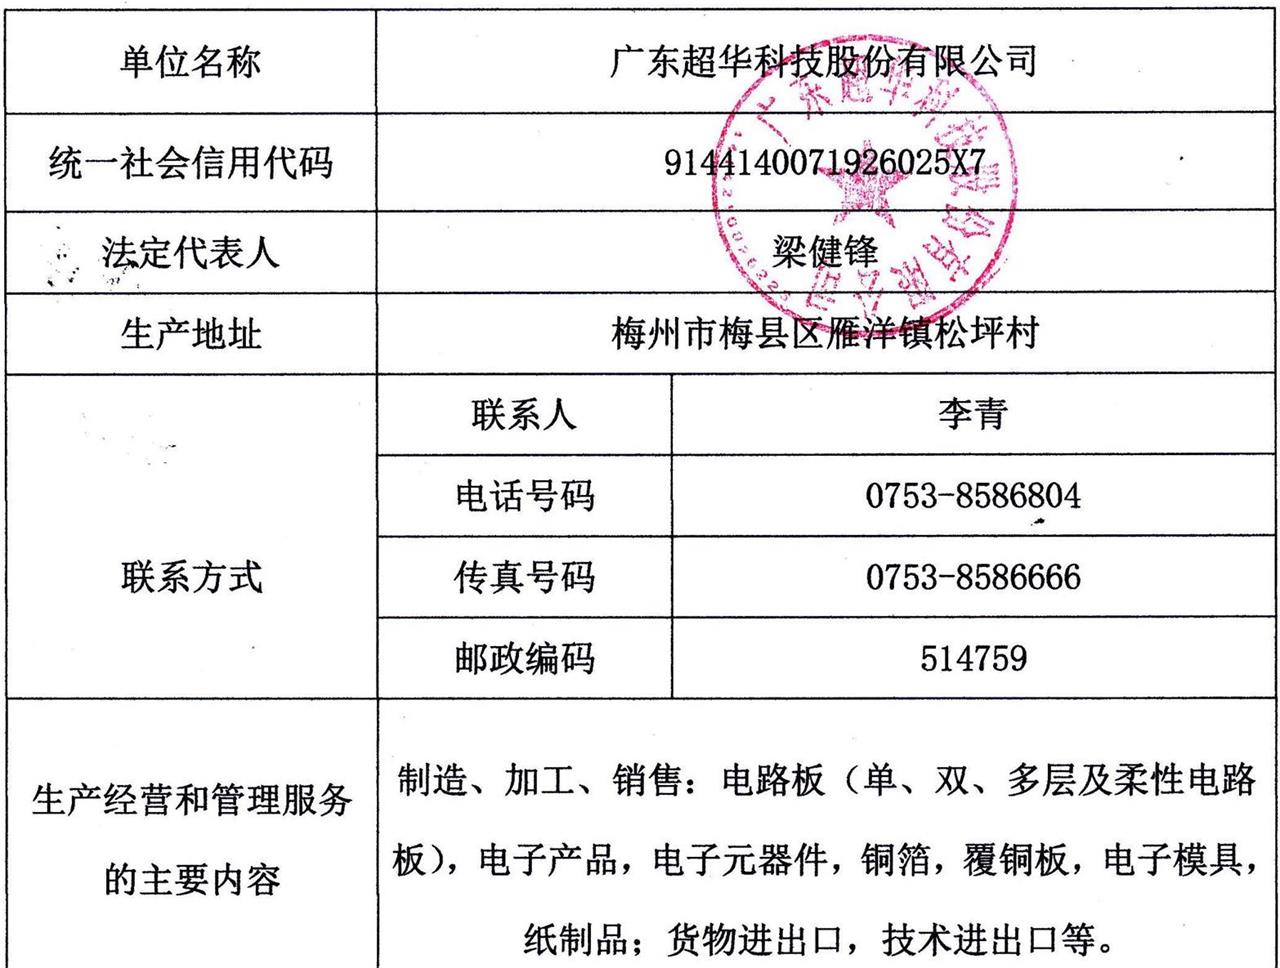 广东超华科技股份有限公司2020年度固体废物污染环境防治信息公示